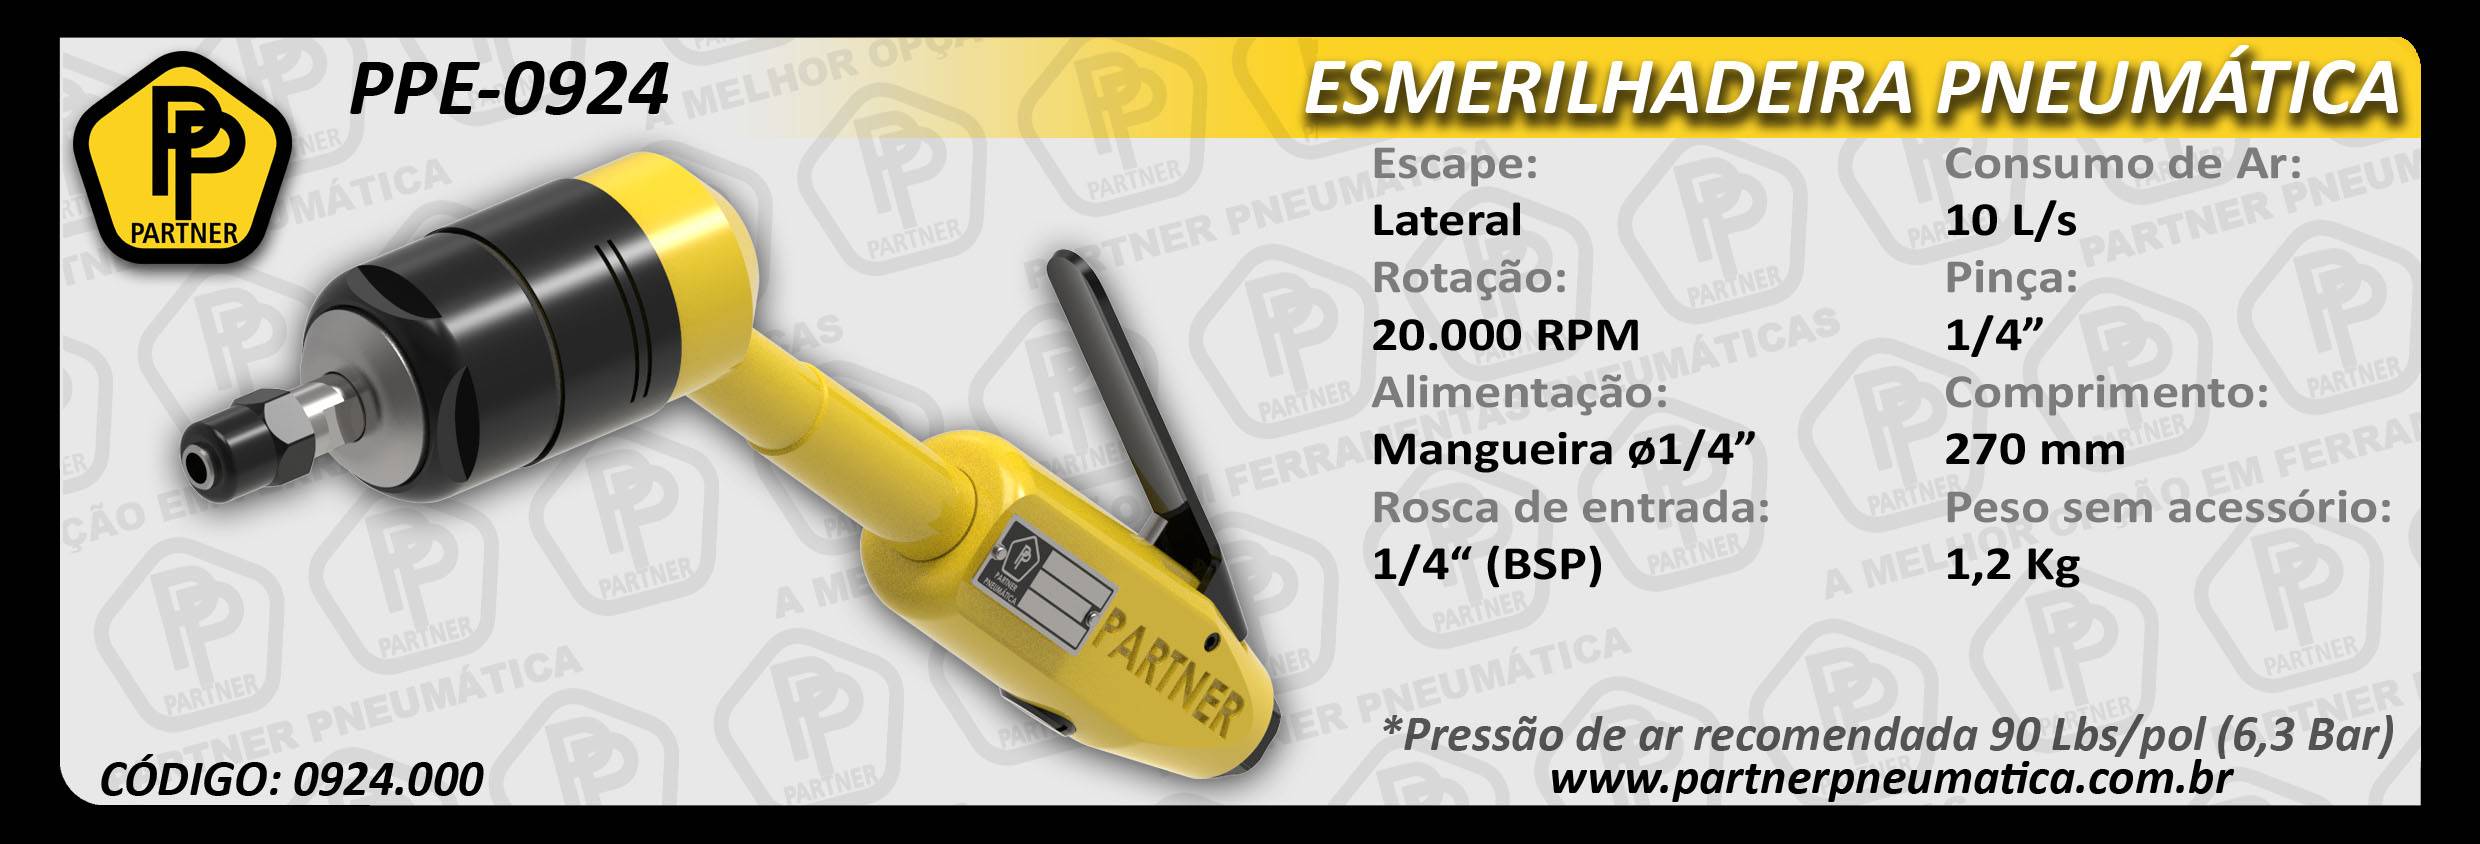 Esmerilhadeira PPE-0924